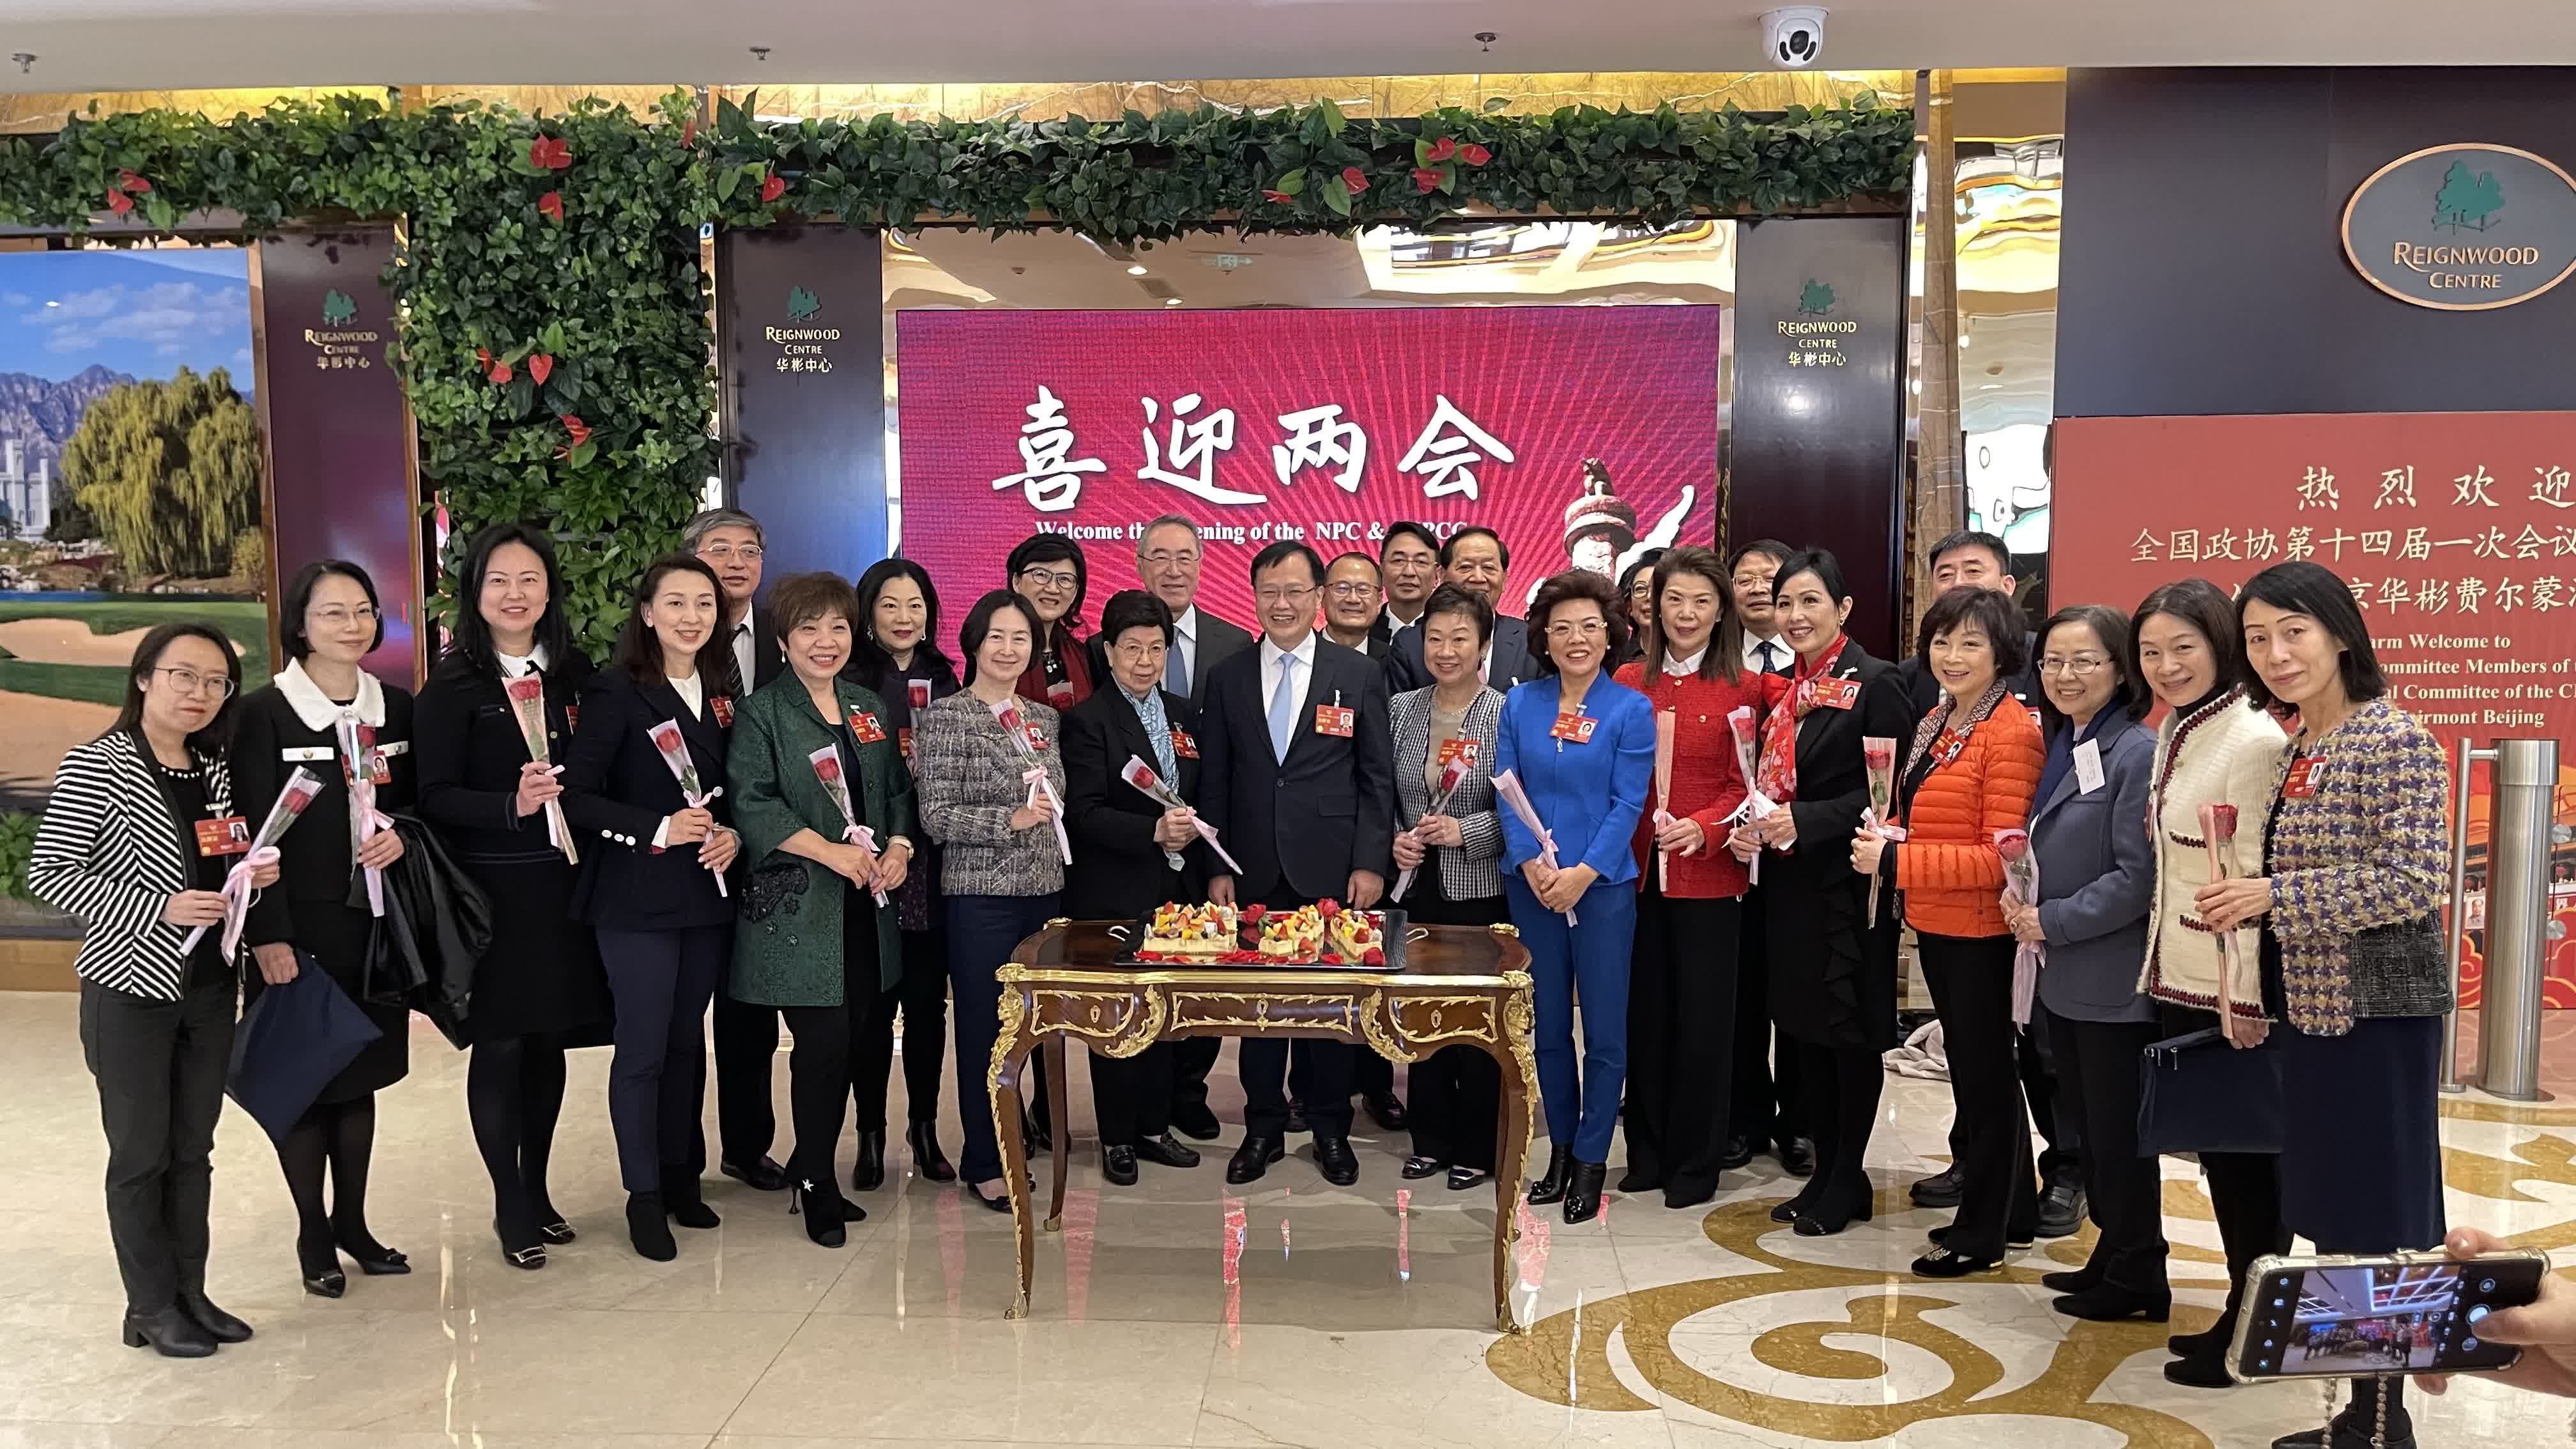 陳冬委員在華彬酒店祝賀與會港區女委員節日快樂，每位女委員都獲得節日驚喜——一枝紅玫瑰。（受訪者供圖）